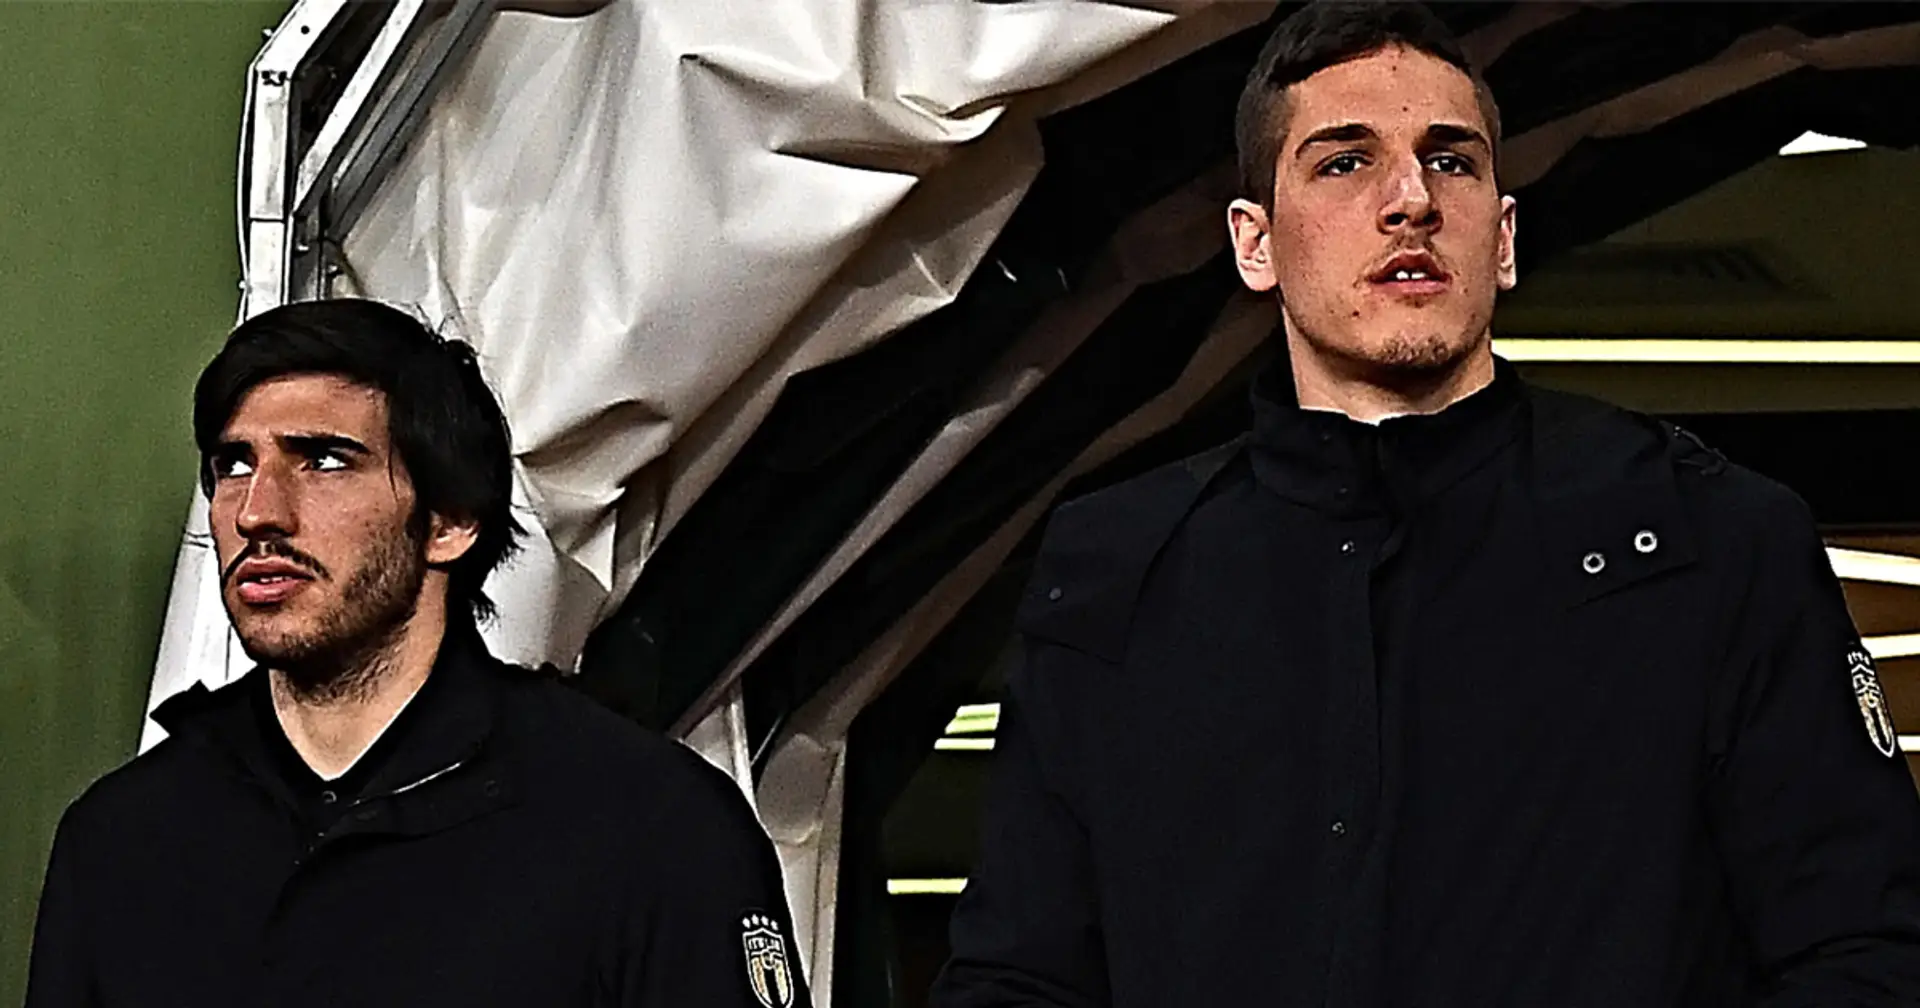 Tonali et Zaniolo quittent la sélection nationale à 2 jours du match de l'Italie contre Malte : la raison révélée